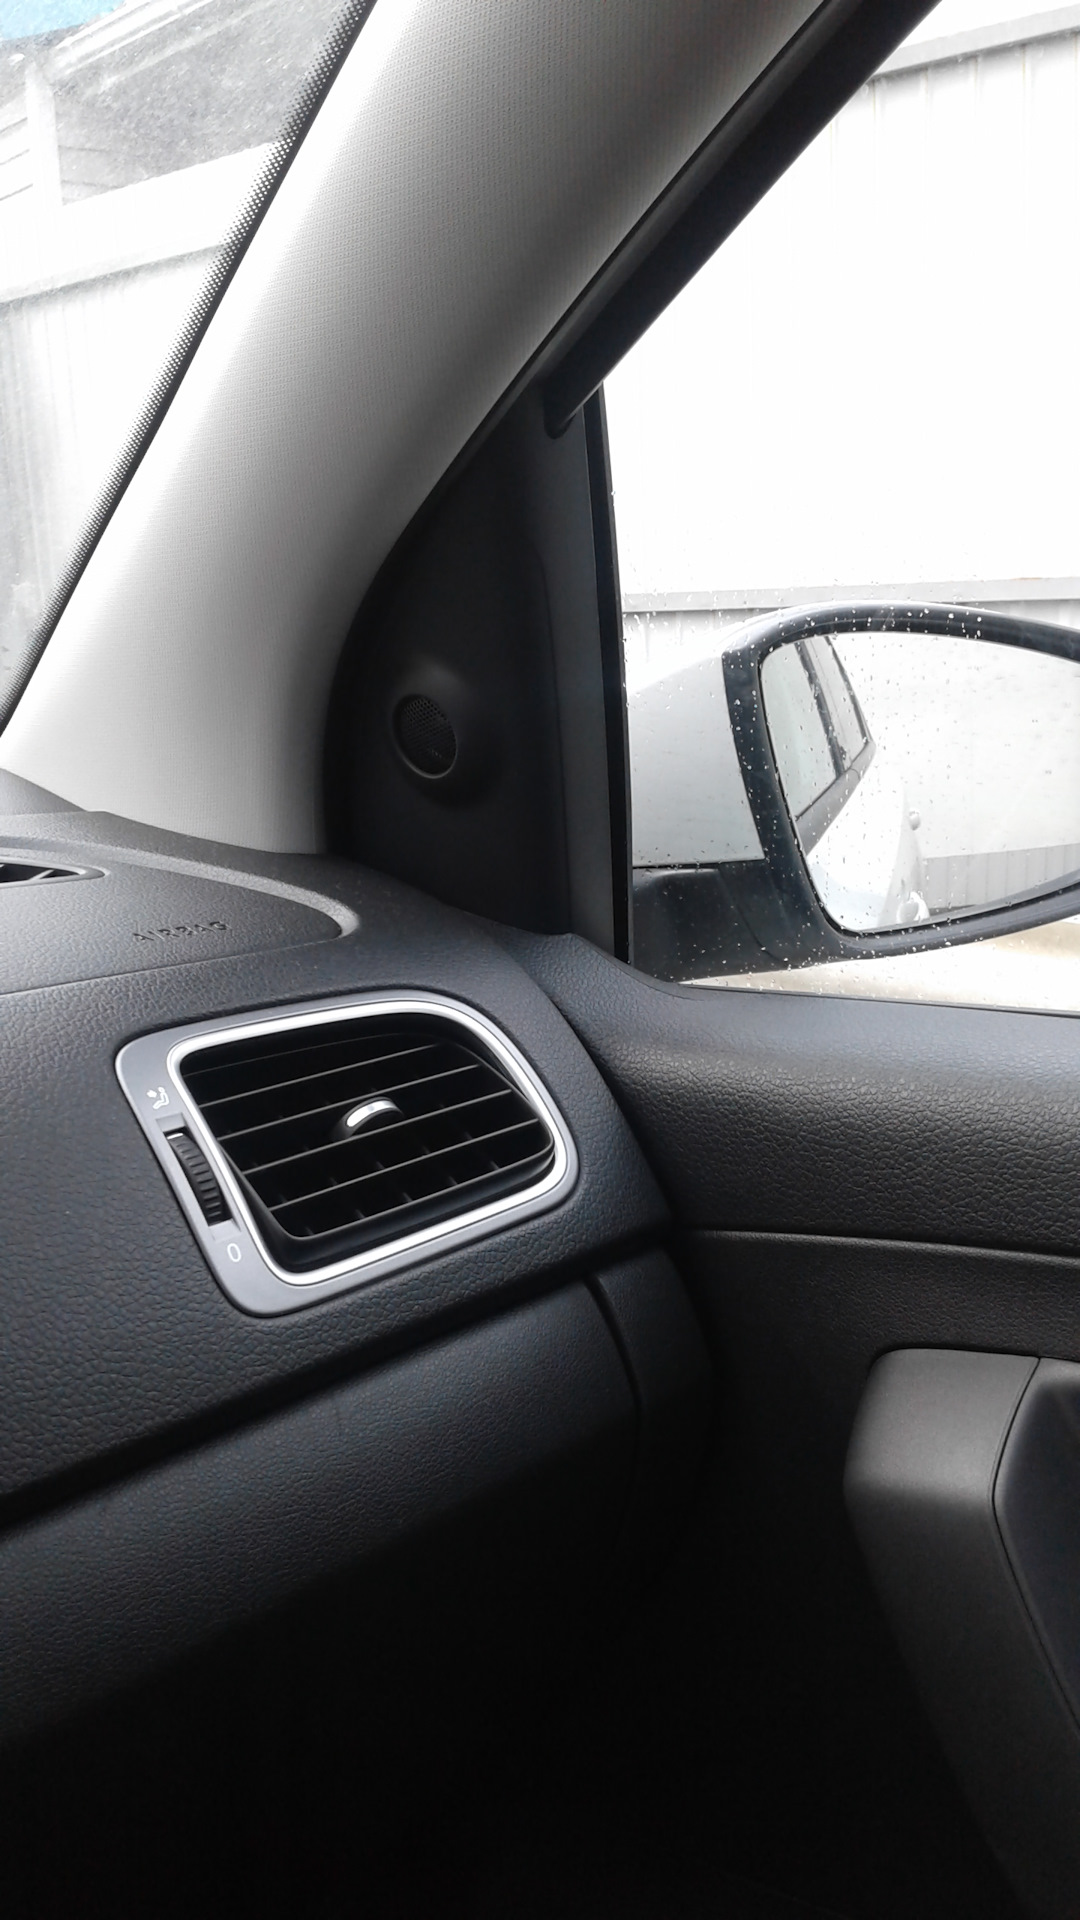 Купить зеркало на поло. Уголки зеркал Фольксваген поло 2013. Volkswagen Polo sedan салонное зеркало. Зеркало поло Фольксваген поло.